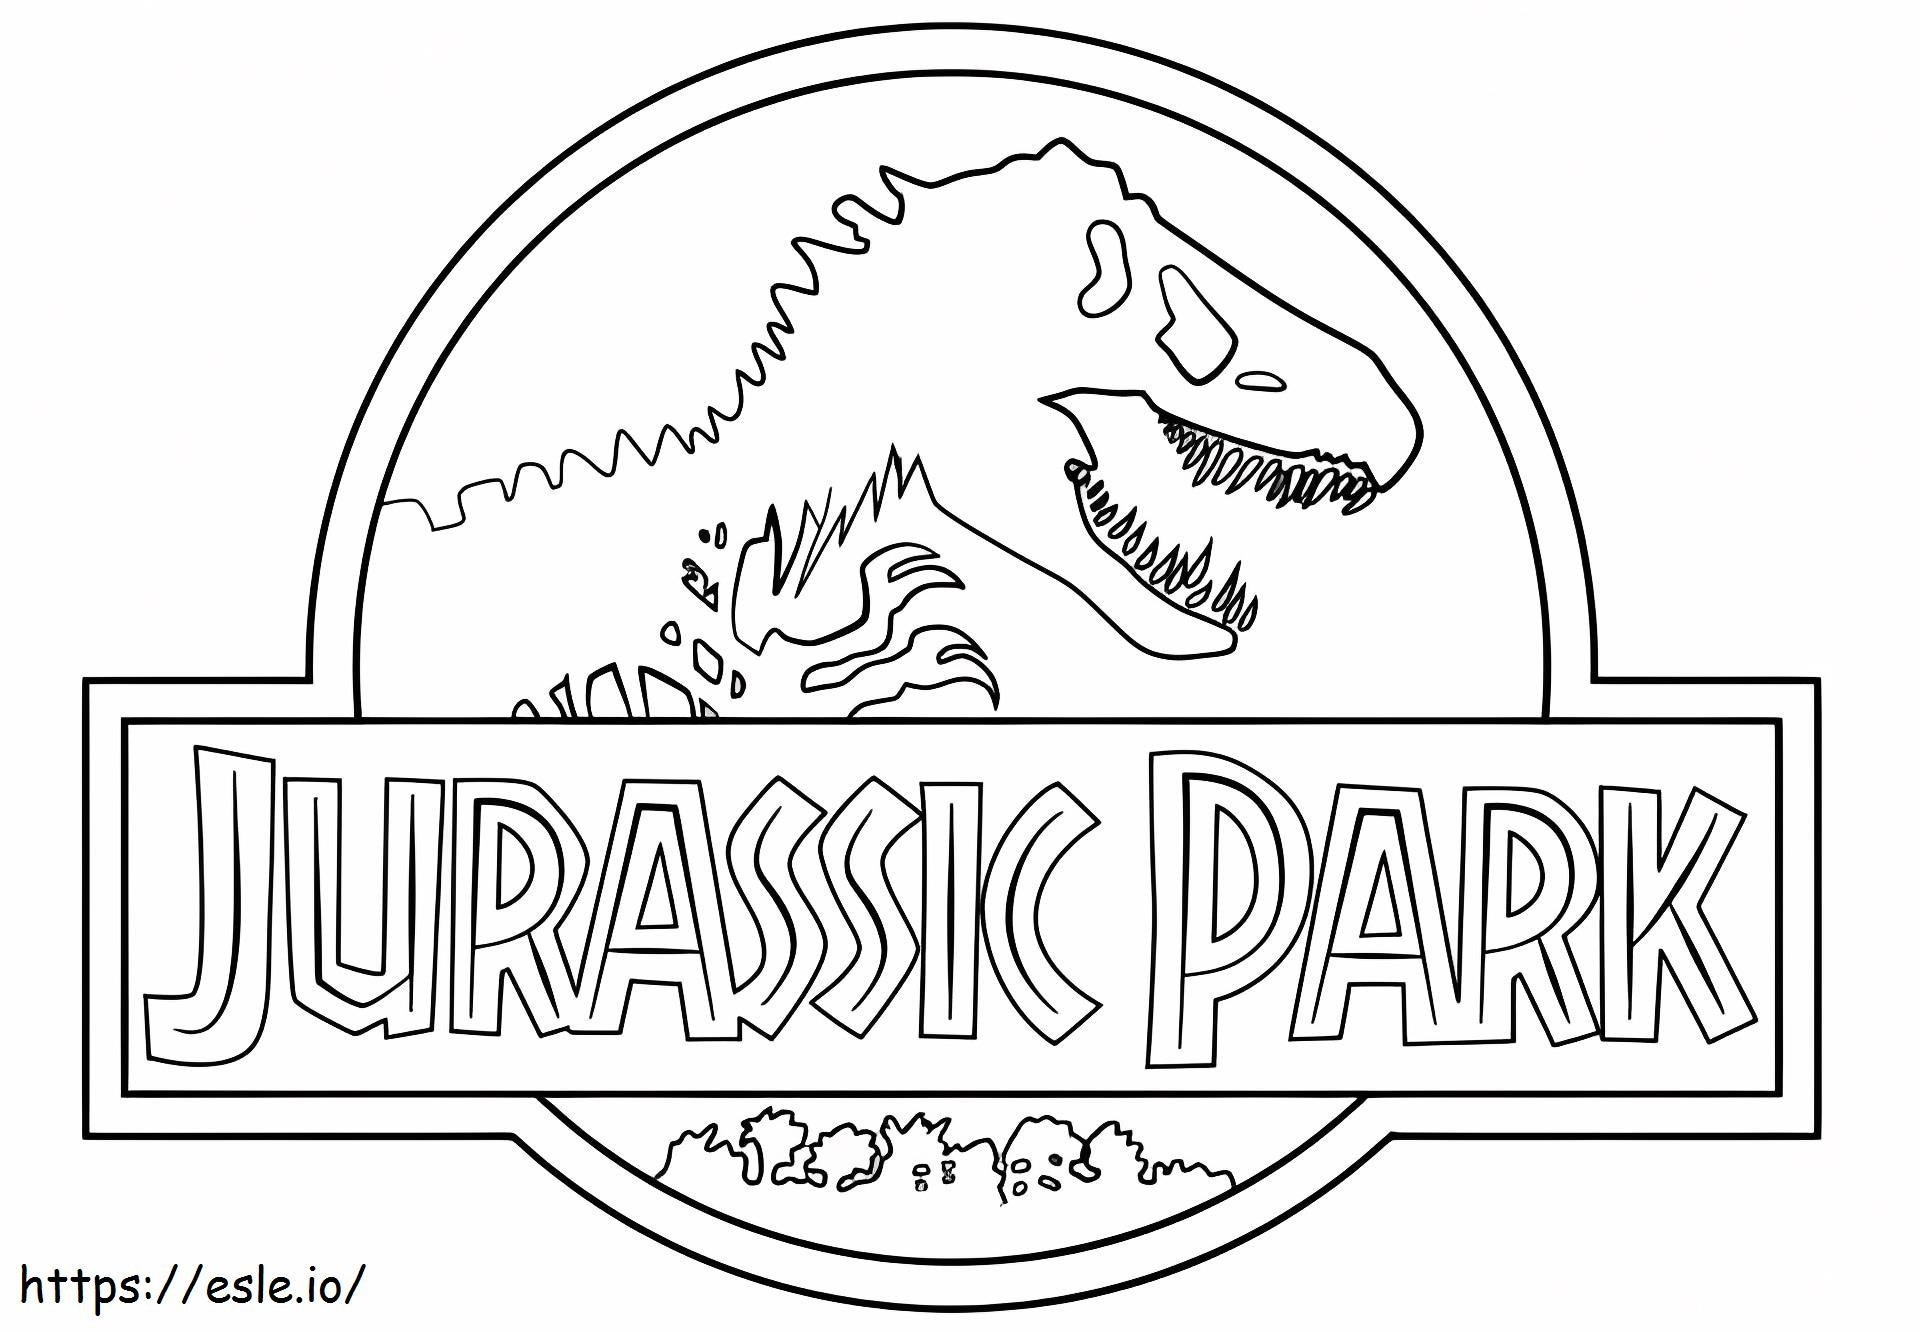 Logotipo do Parque Jurássico para colorir